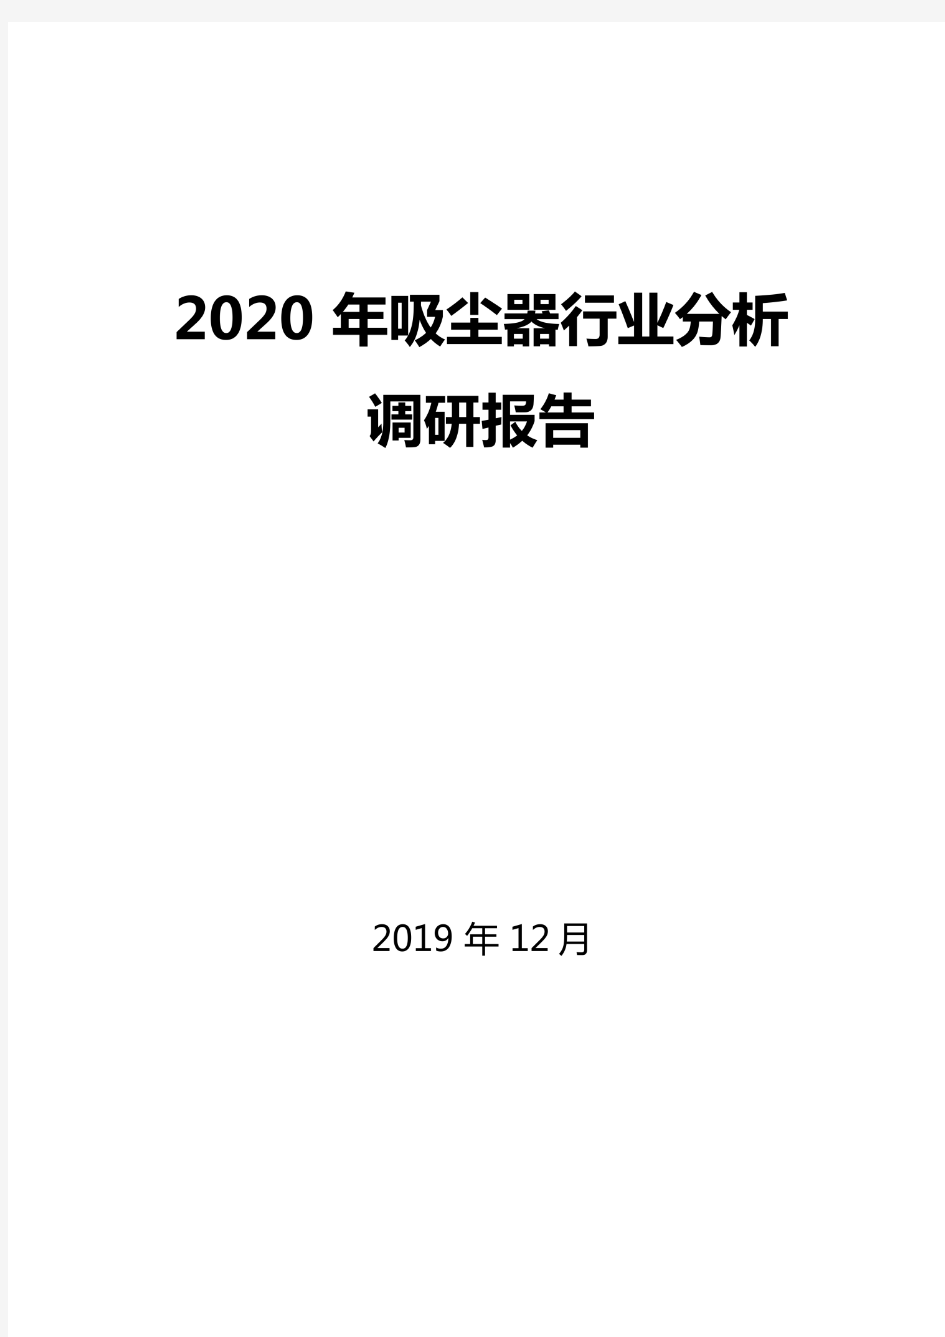 2020年吸尘器行业分析调研报告